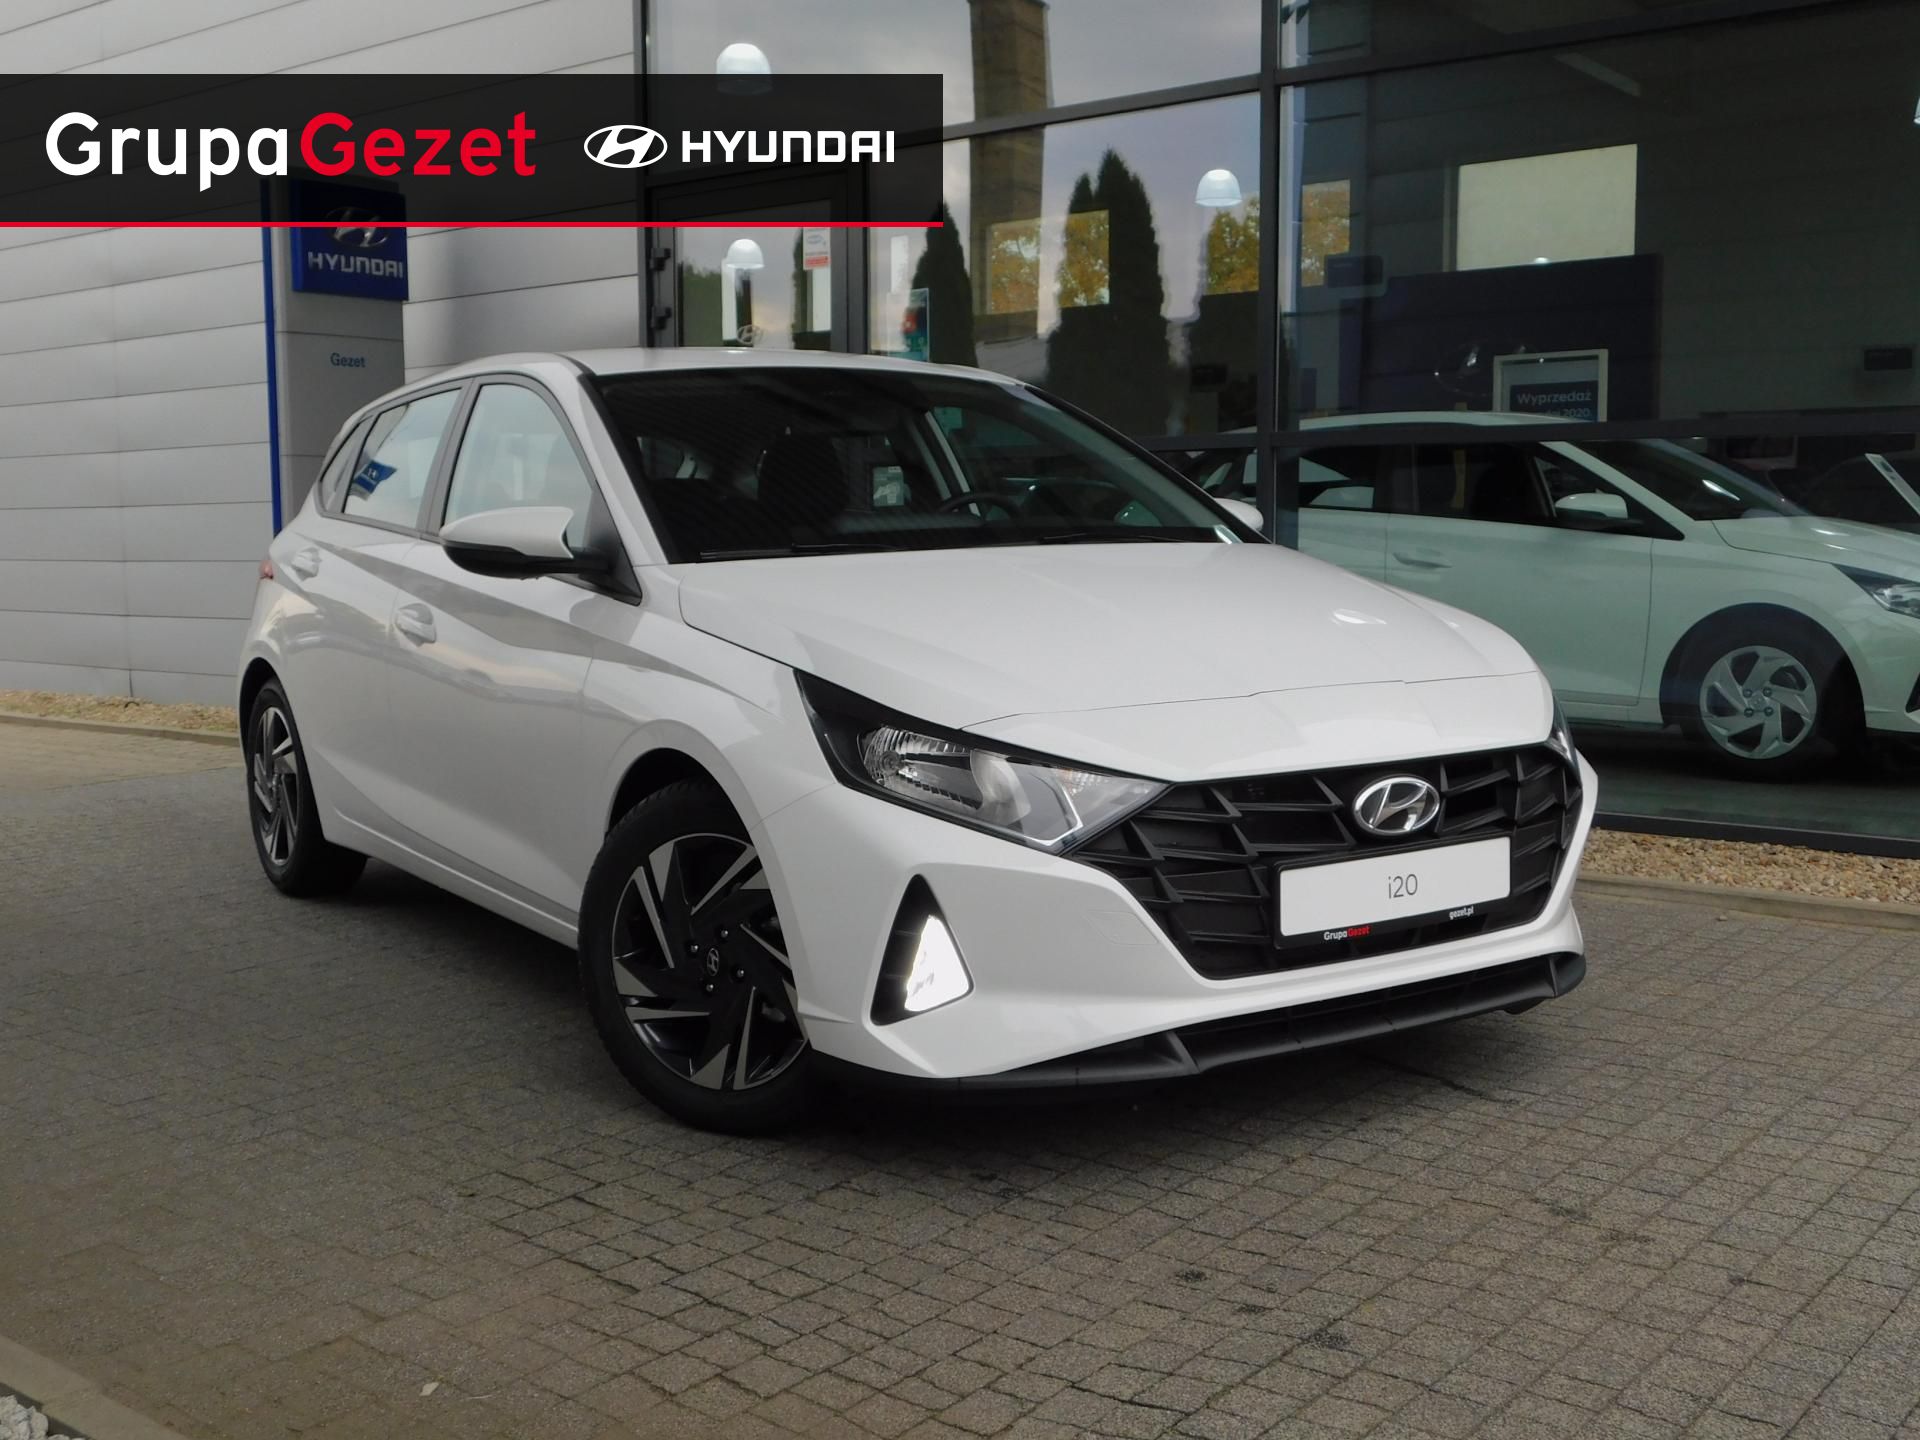 Hyundai I20 1,2 Mpi (84Km) Comfort Nowy Model! | Kolor: Biały ✰ Samochody - Nowe I Używane Z Gwarancją ✰ Grupa Gezet